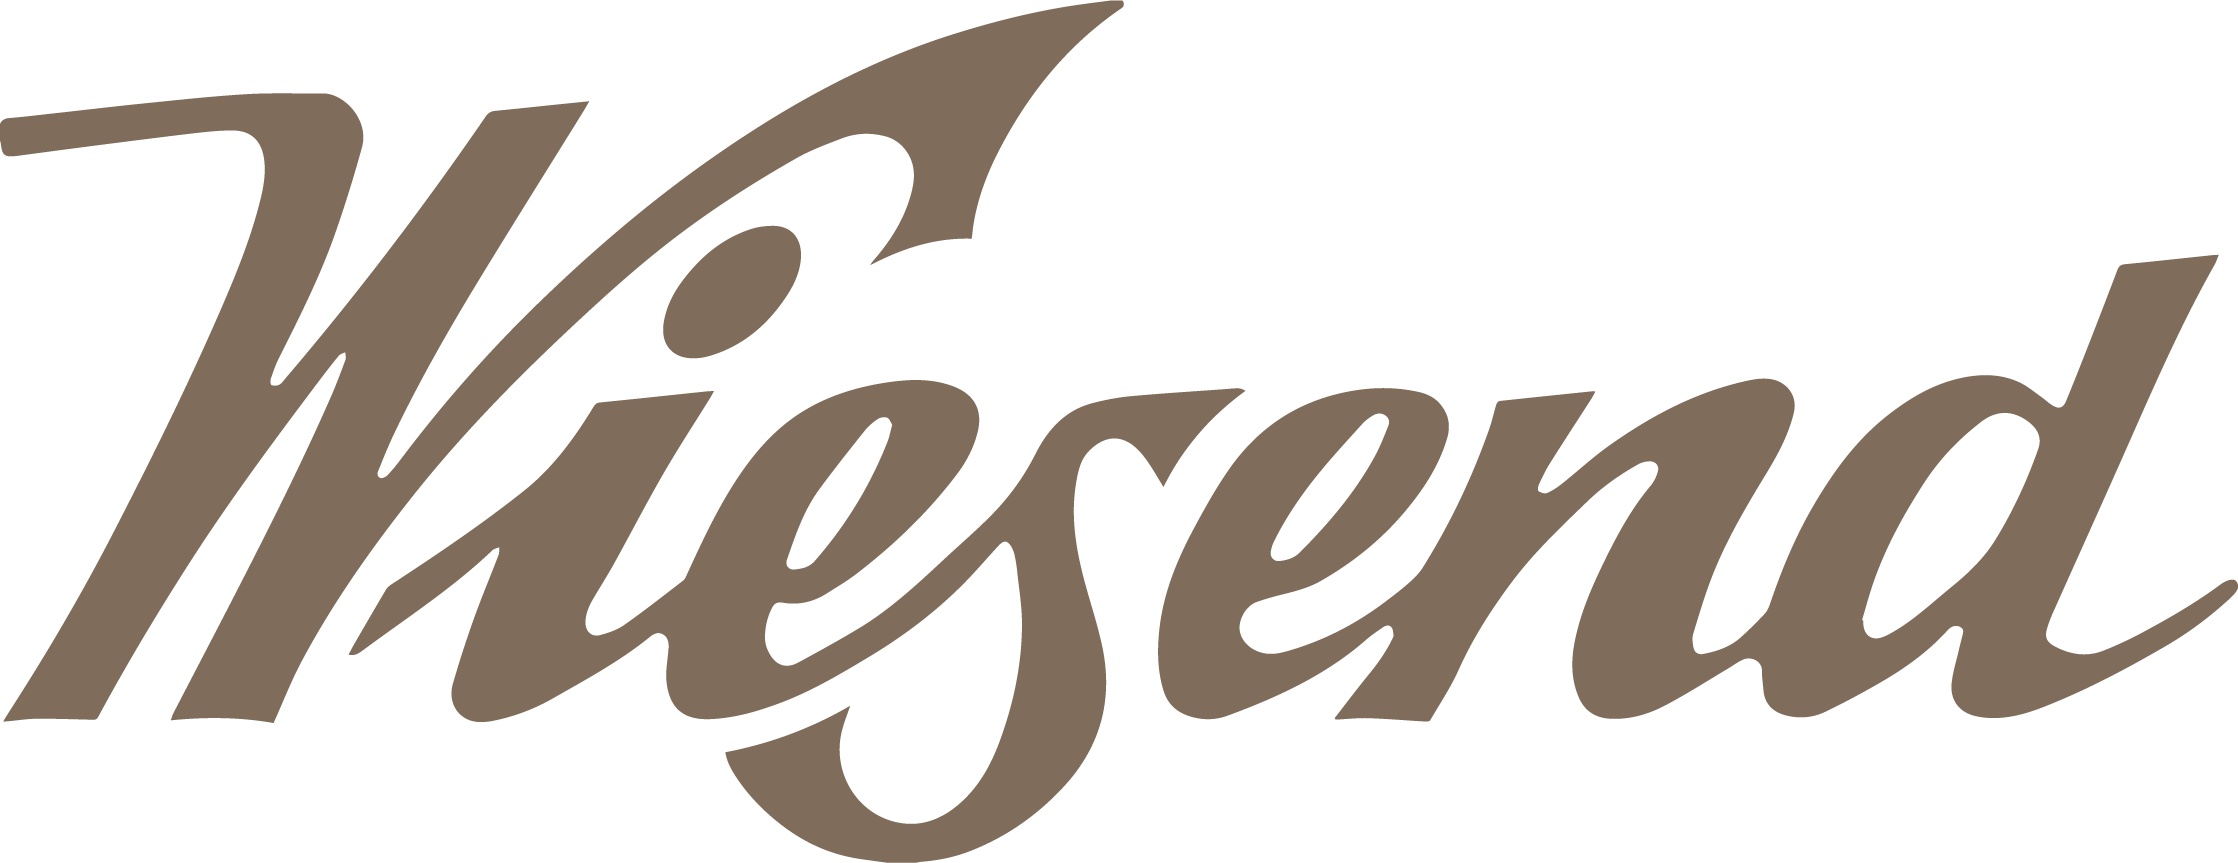 Wiesend Logo